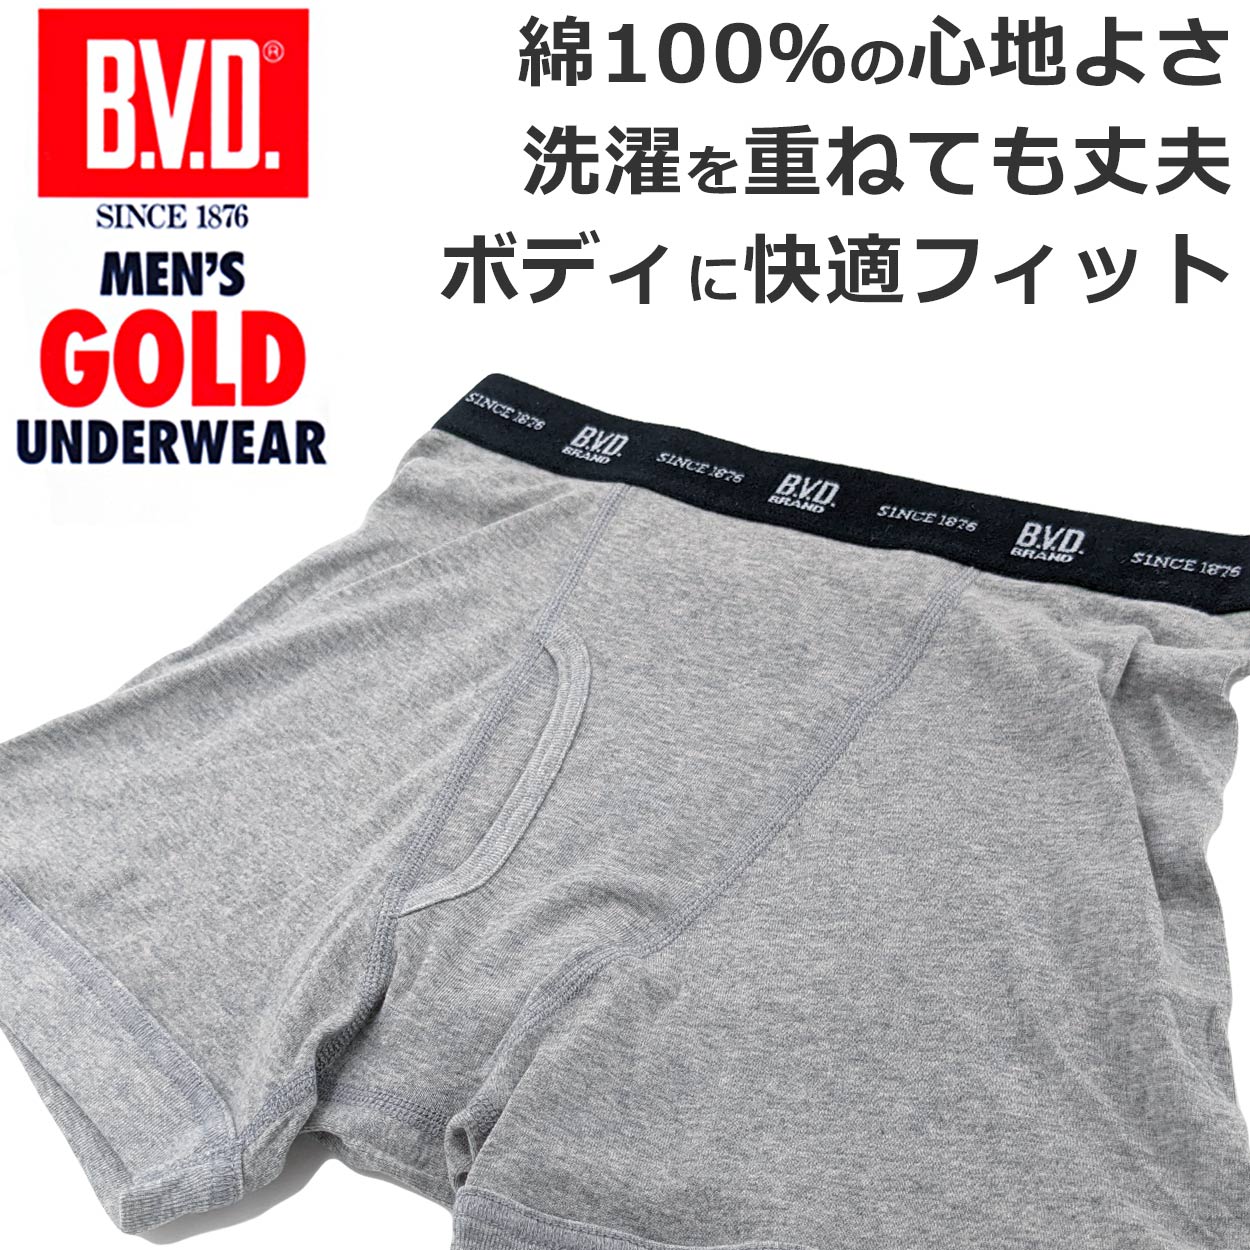 BVD メンズ ボクサーブリーフ 綿100% M～LL (コットン 前開き 下着 肌着 インナー 男性 紳士 ボクサーパンツ グレー ブラック)